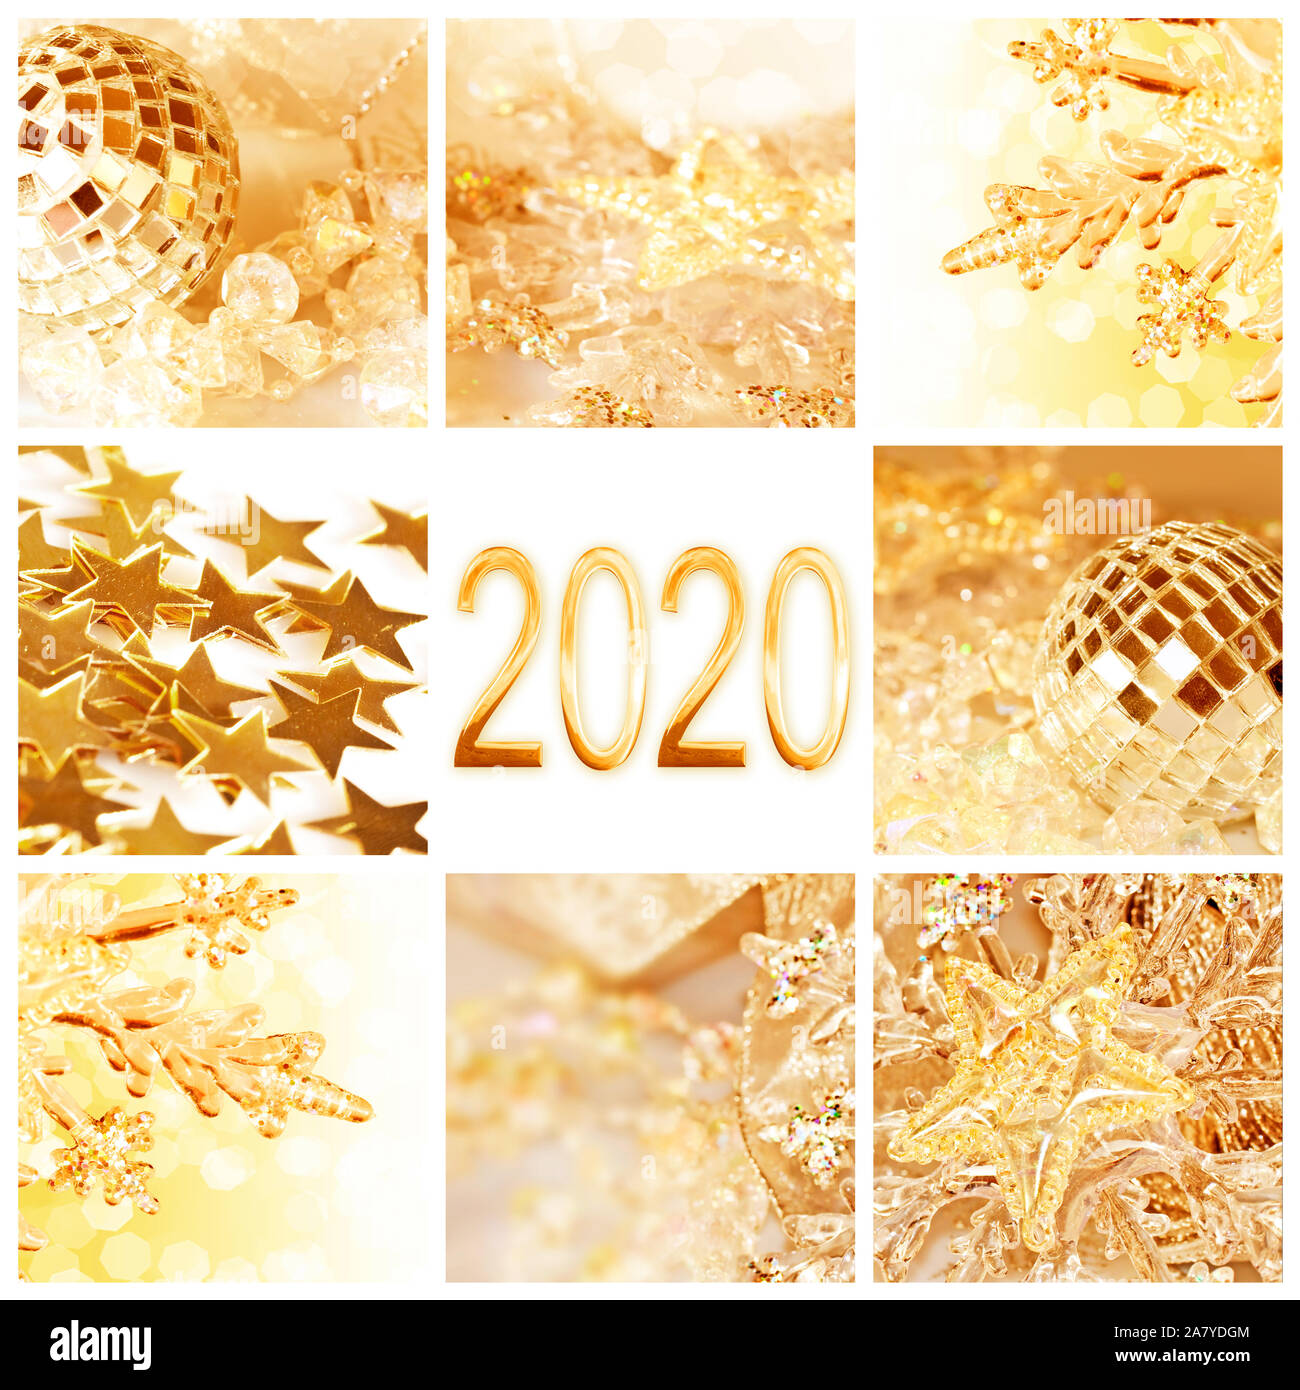 2020, golden Christmas Ornaments collage Square neues Jahr und Urlaub Grußkarte Stockfoto